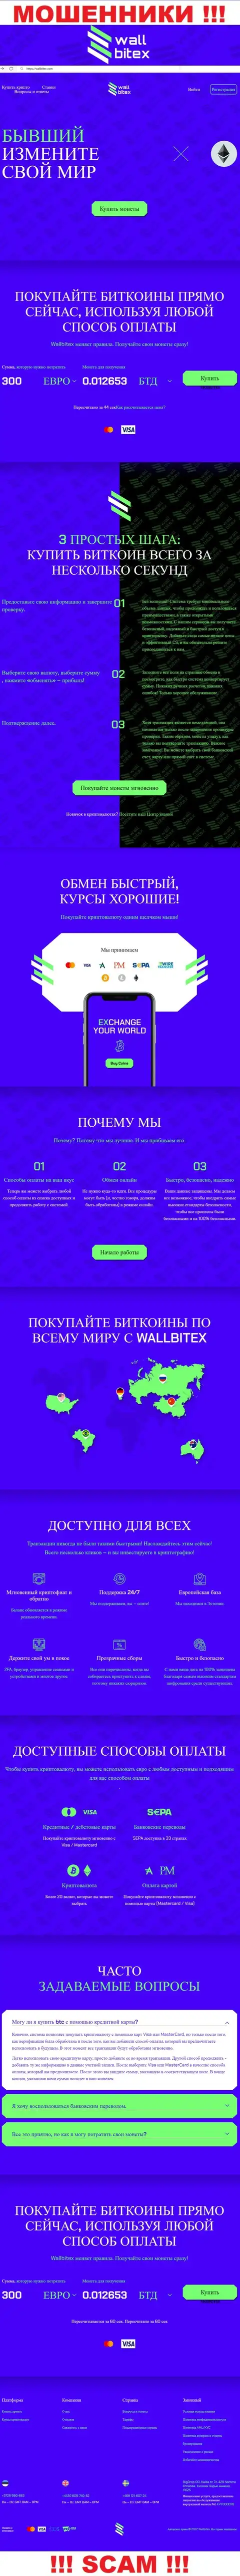 WallBitex Com - это официальный интернет-ресурс противоправно действующей организации ВаллБитекс